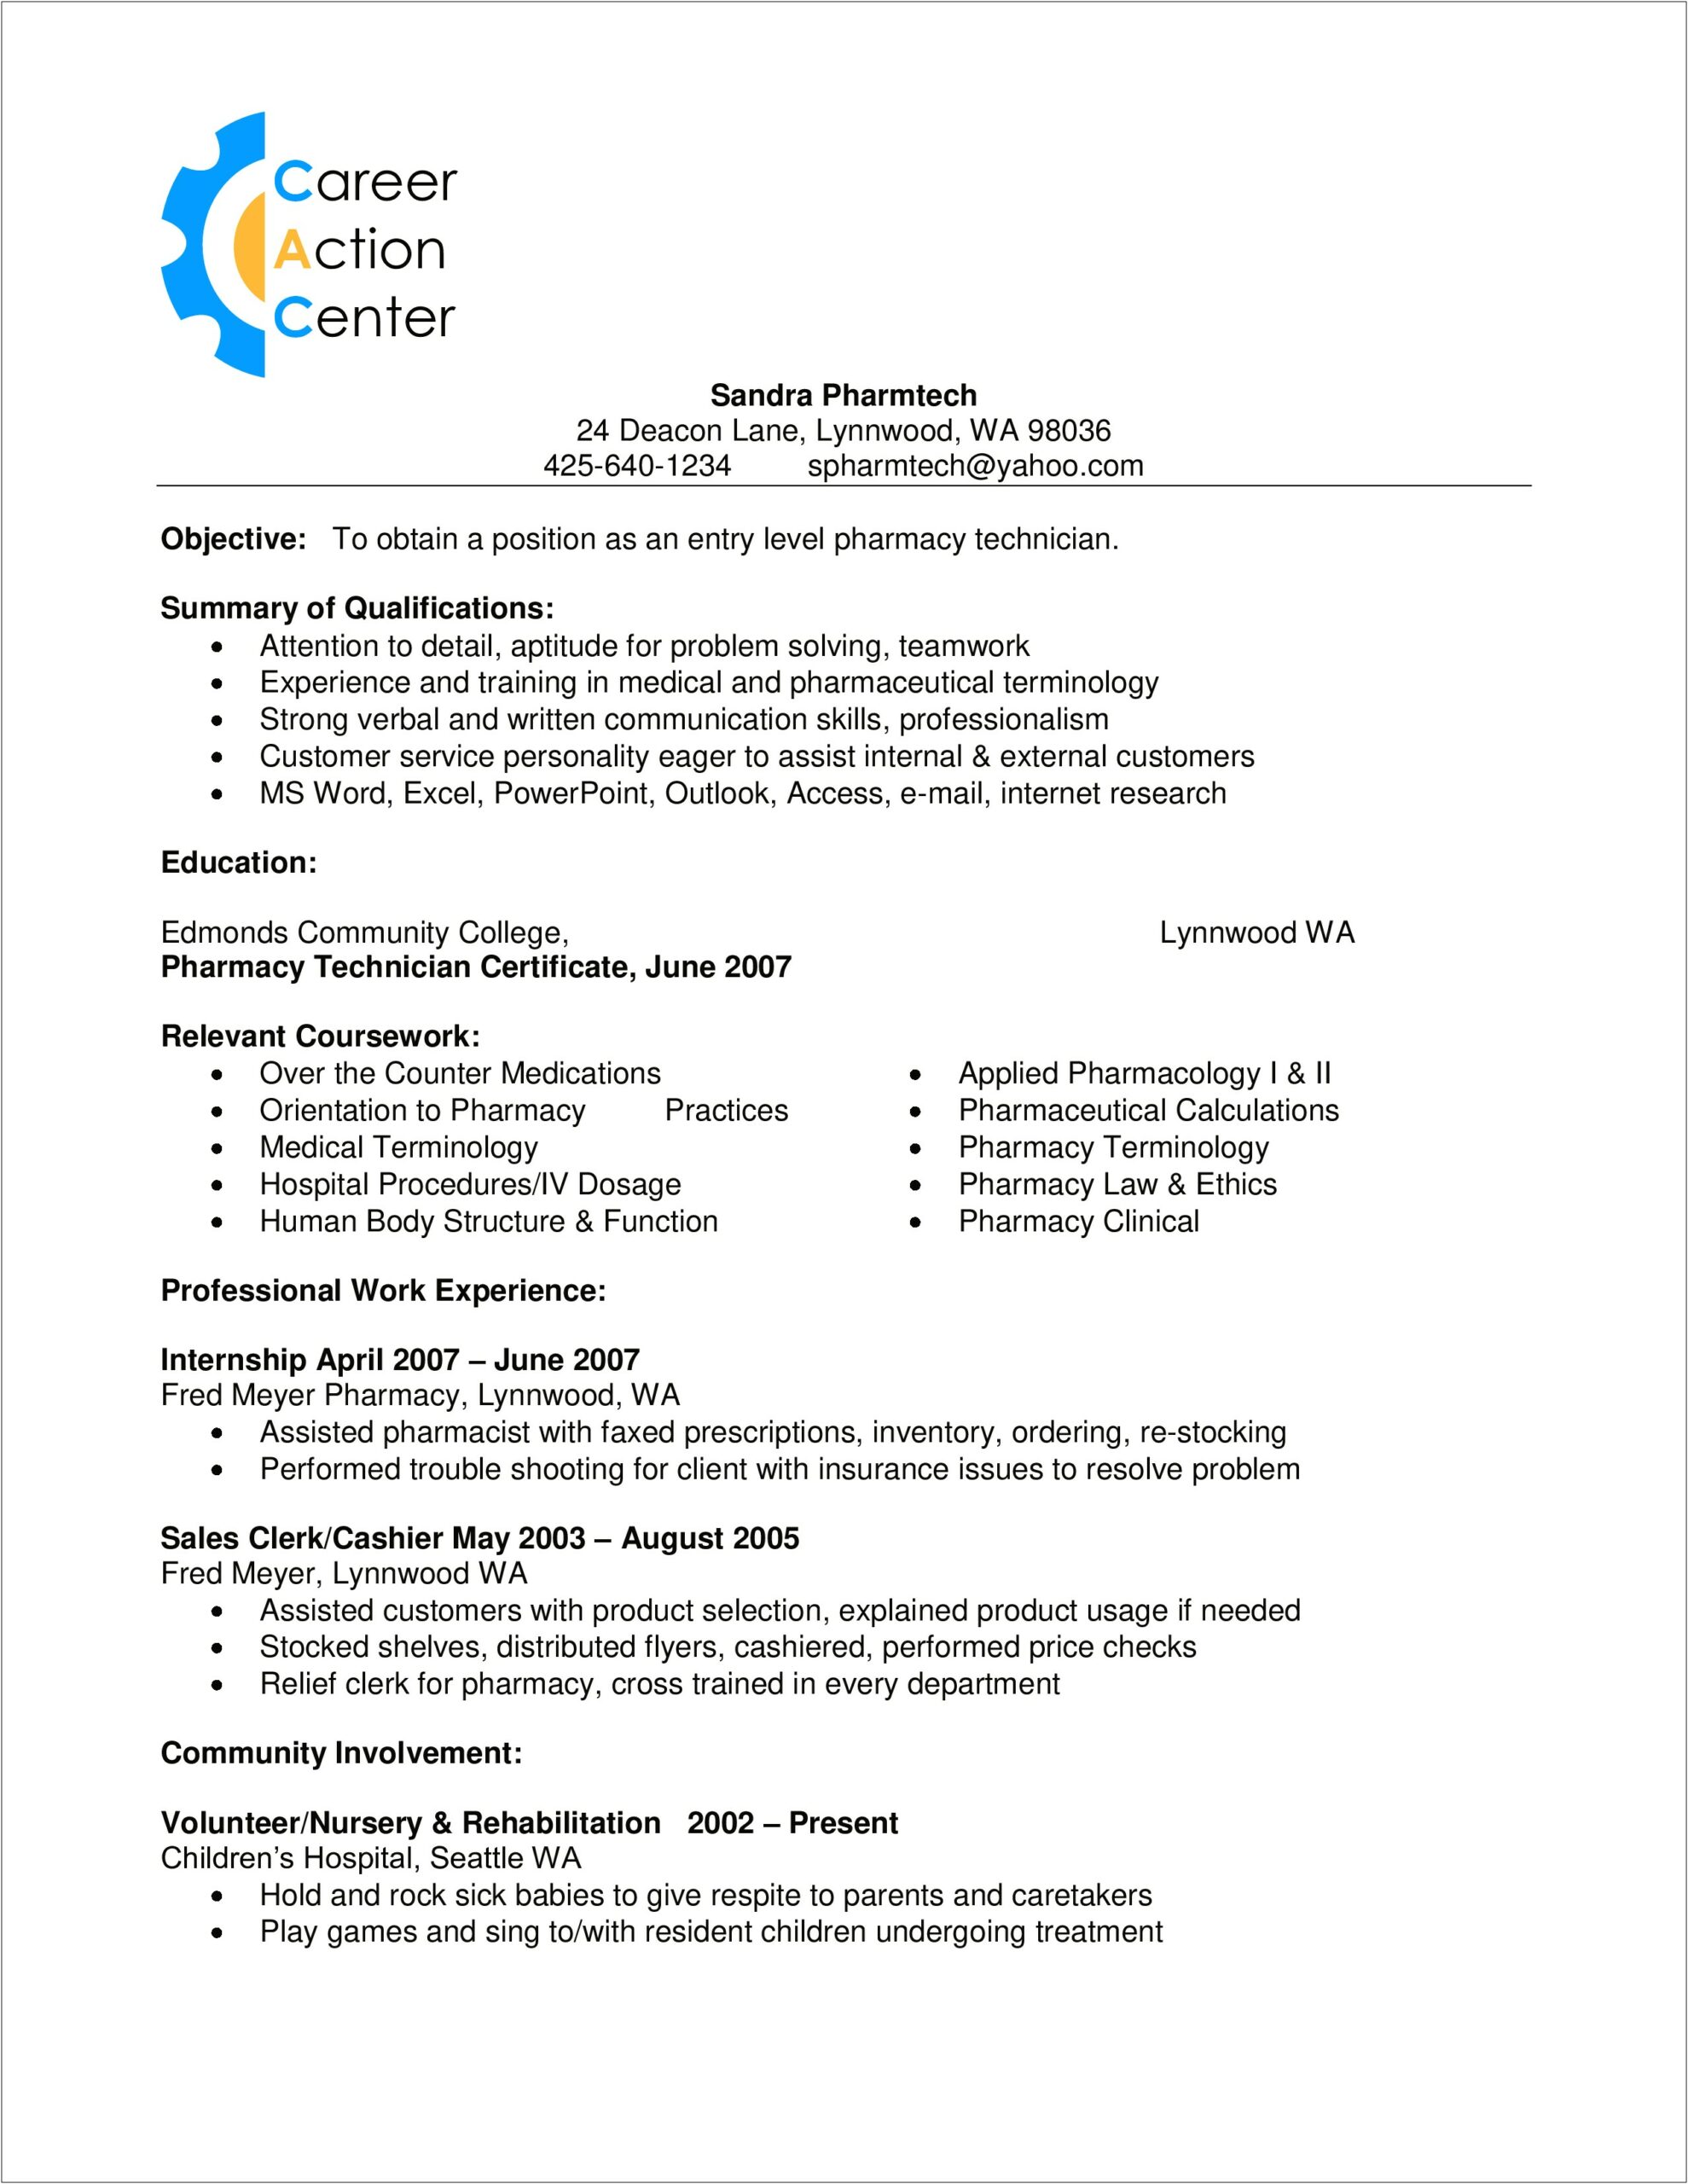 Resume Format For Pharmacy Job